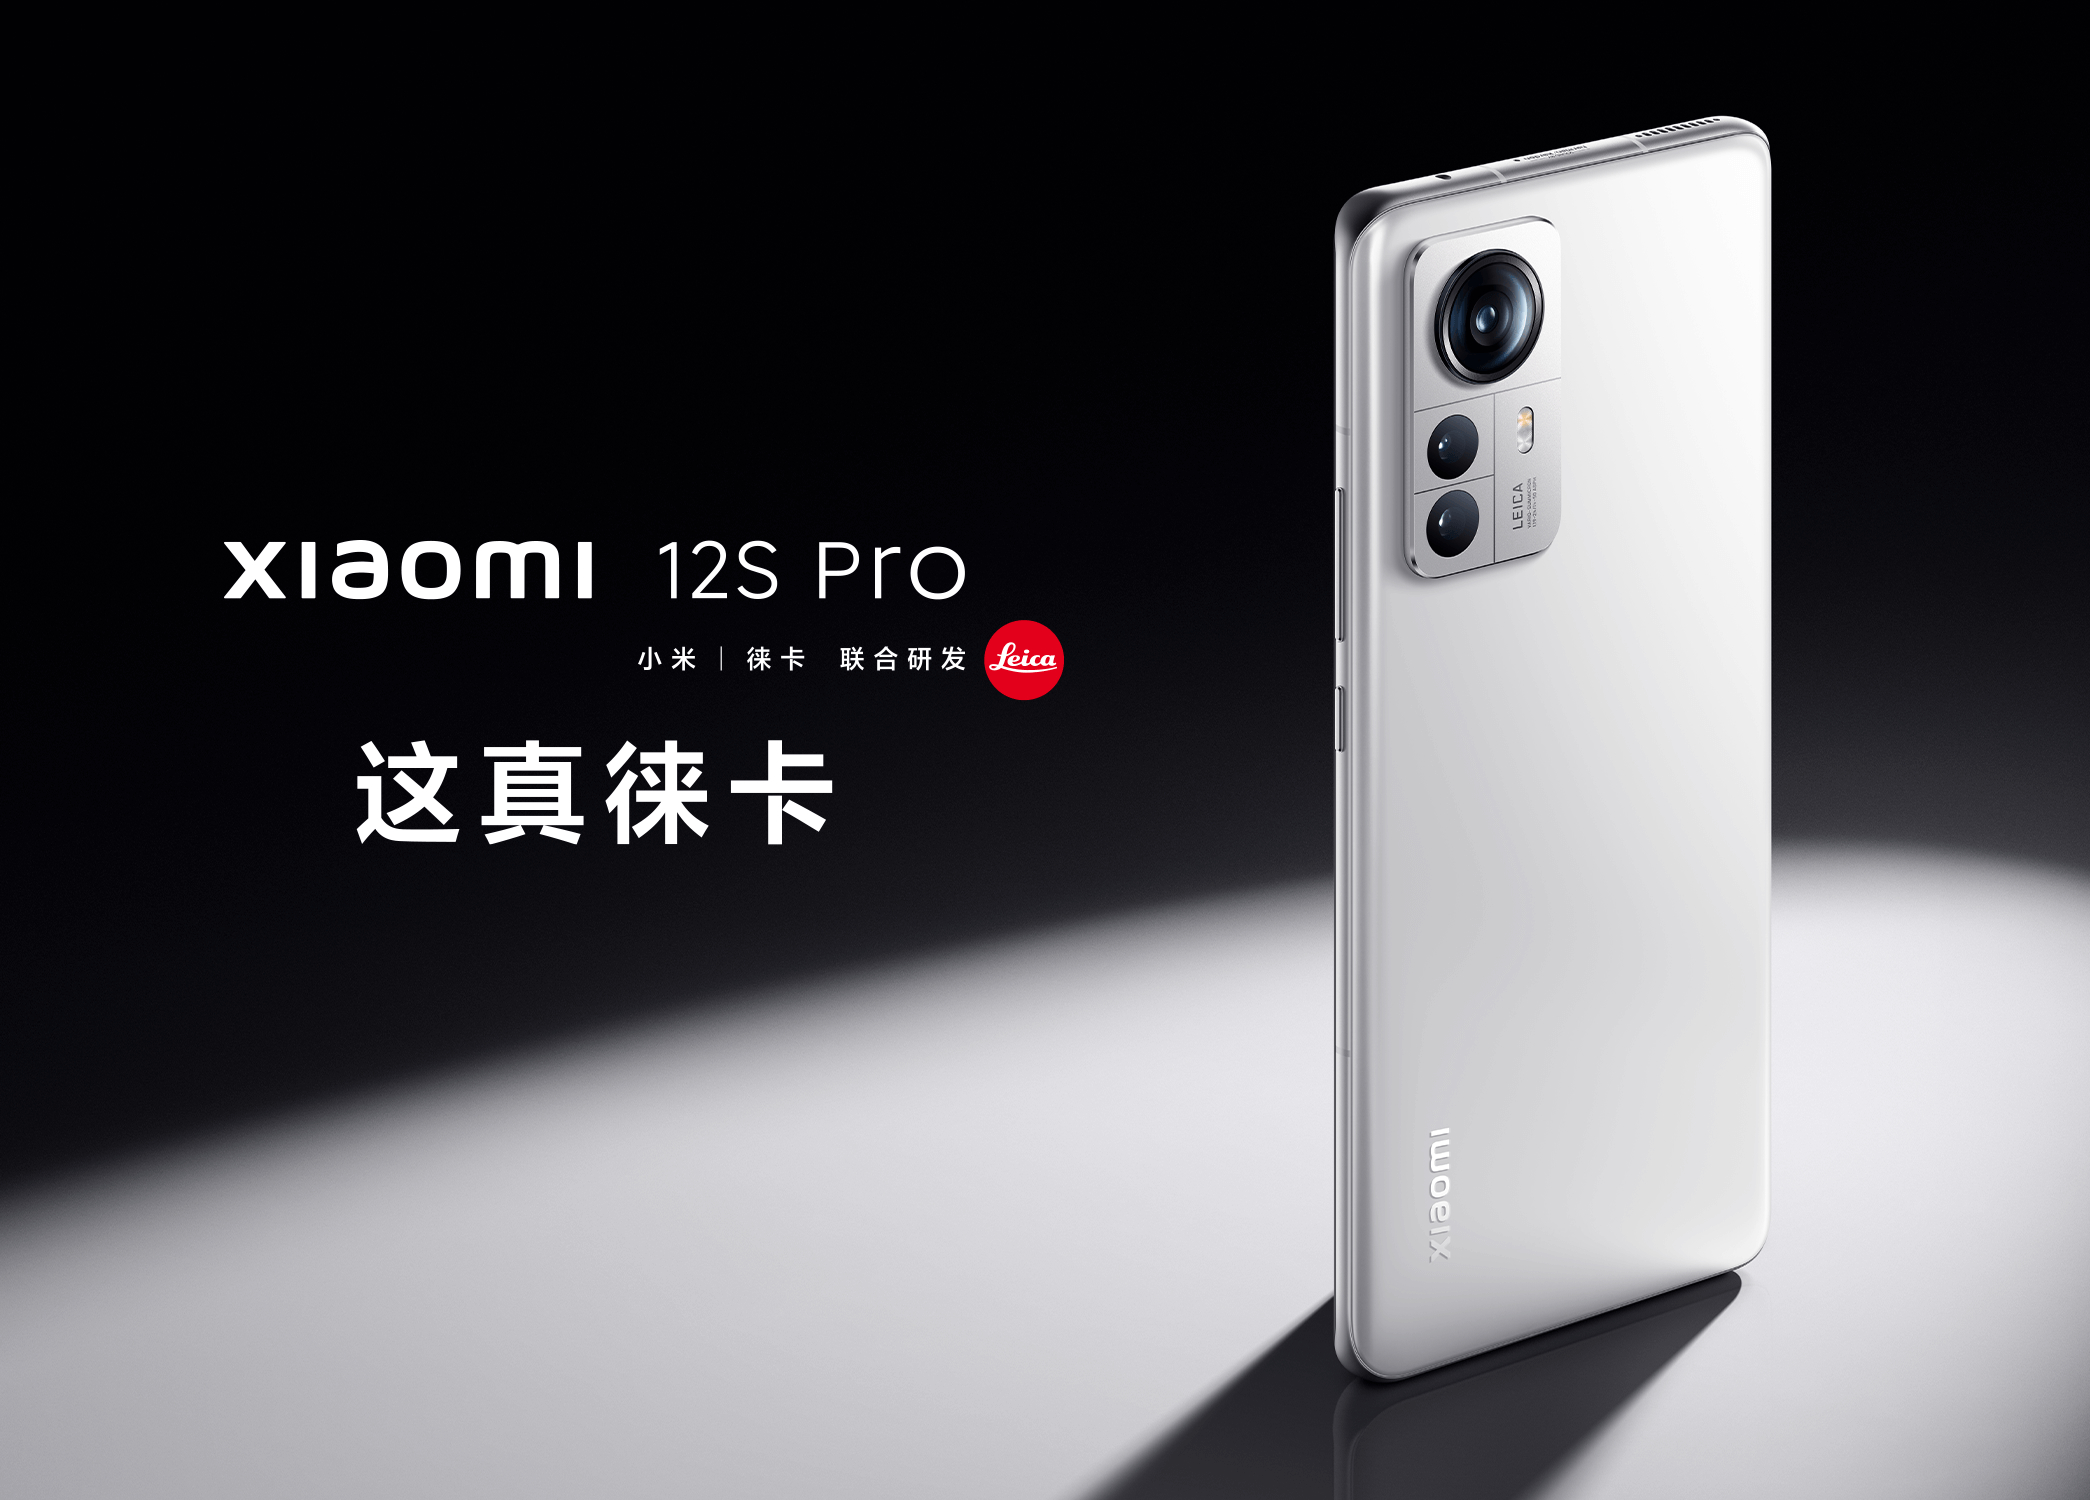 Xiaomi 12S Pro é bom? Confira análise completa do smartphone